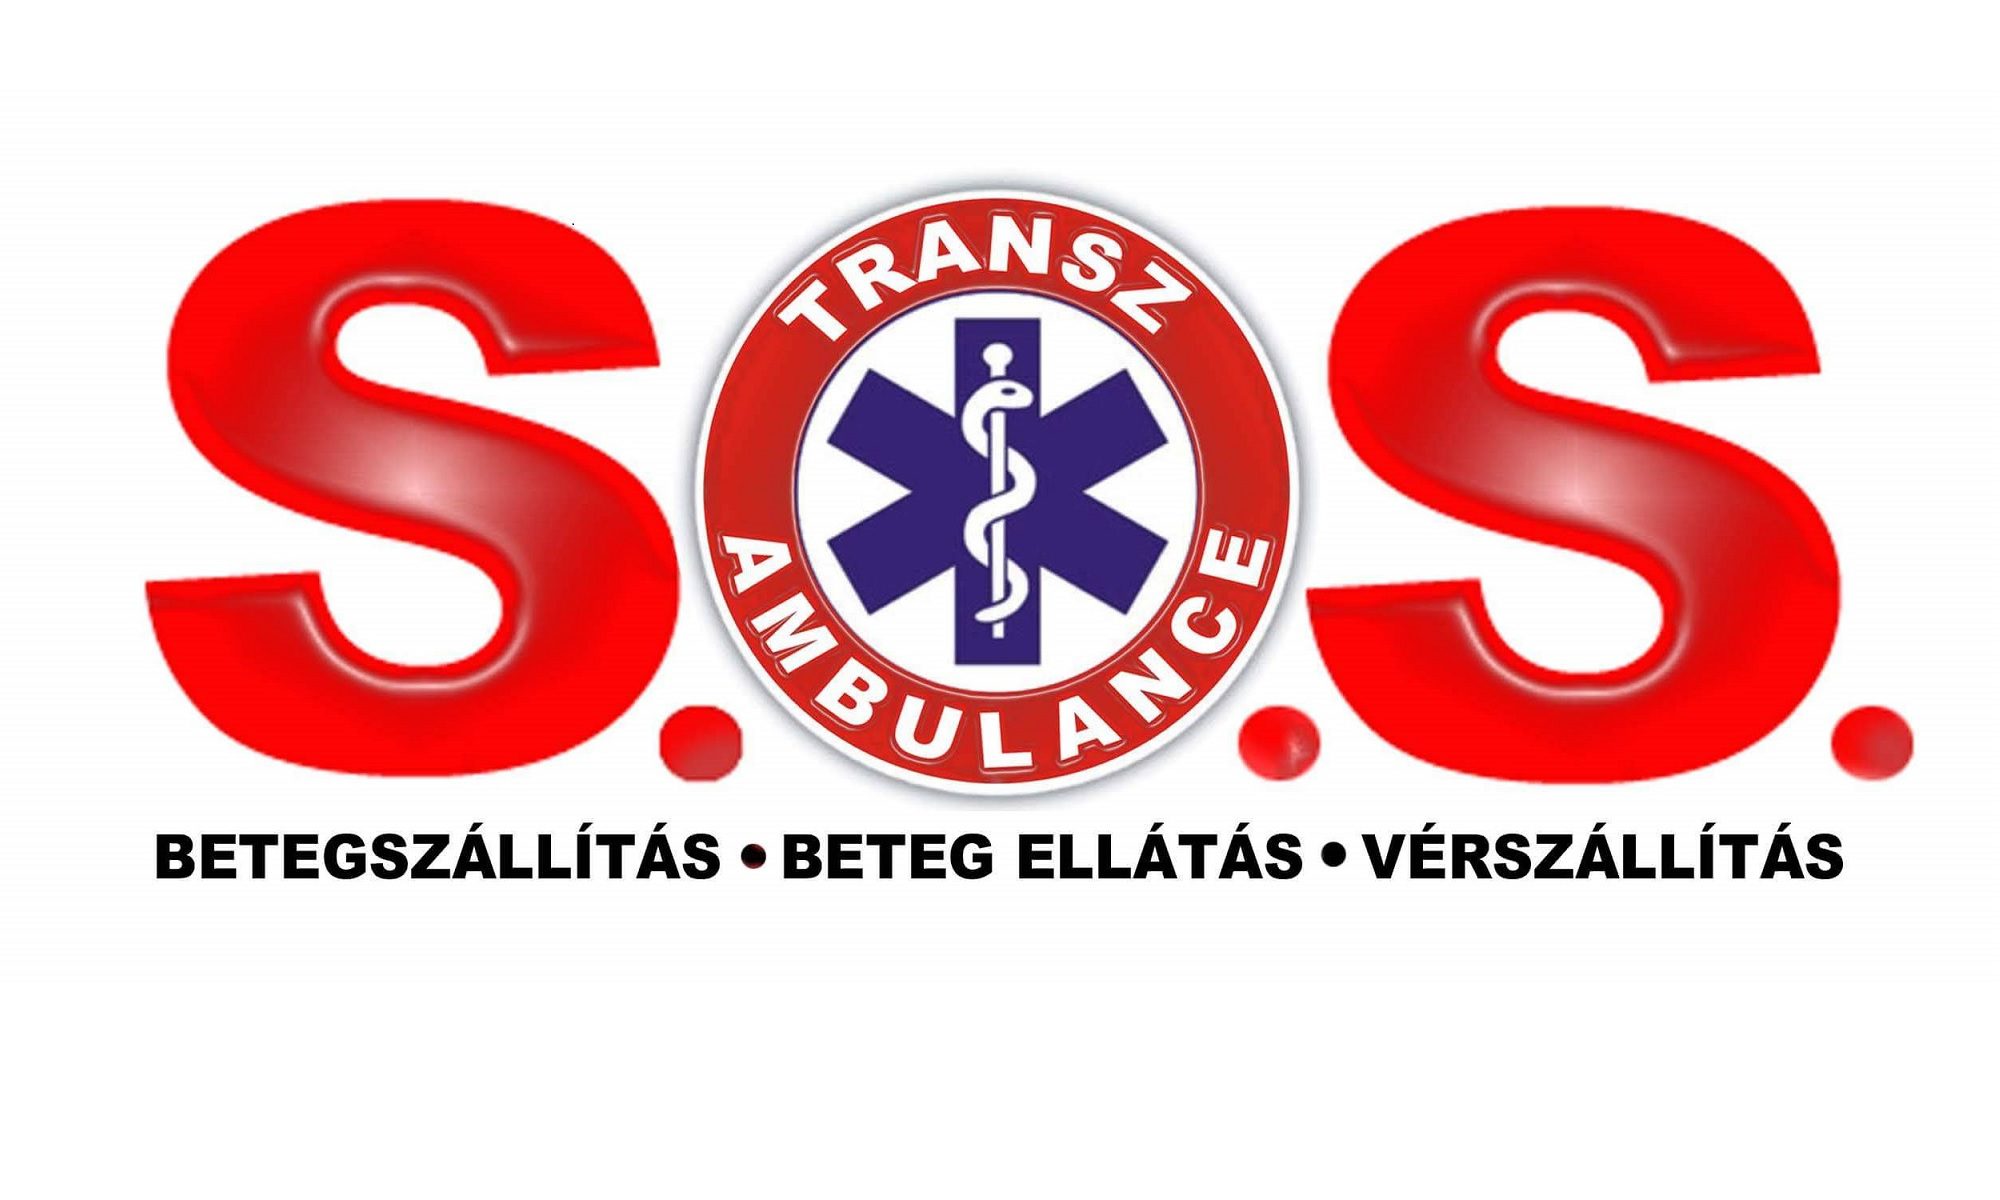 SOS transz ambulance alapítvány